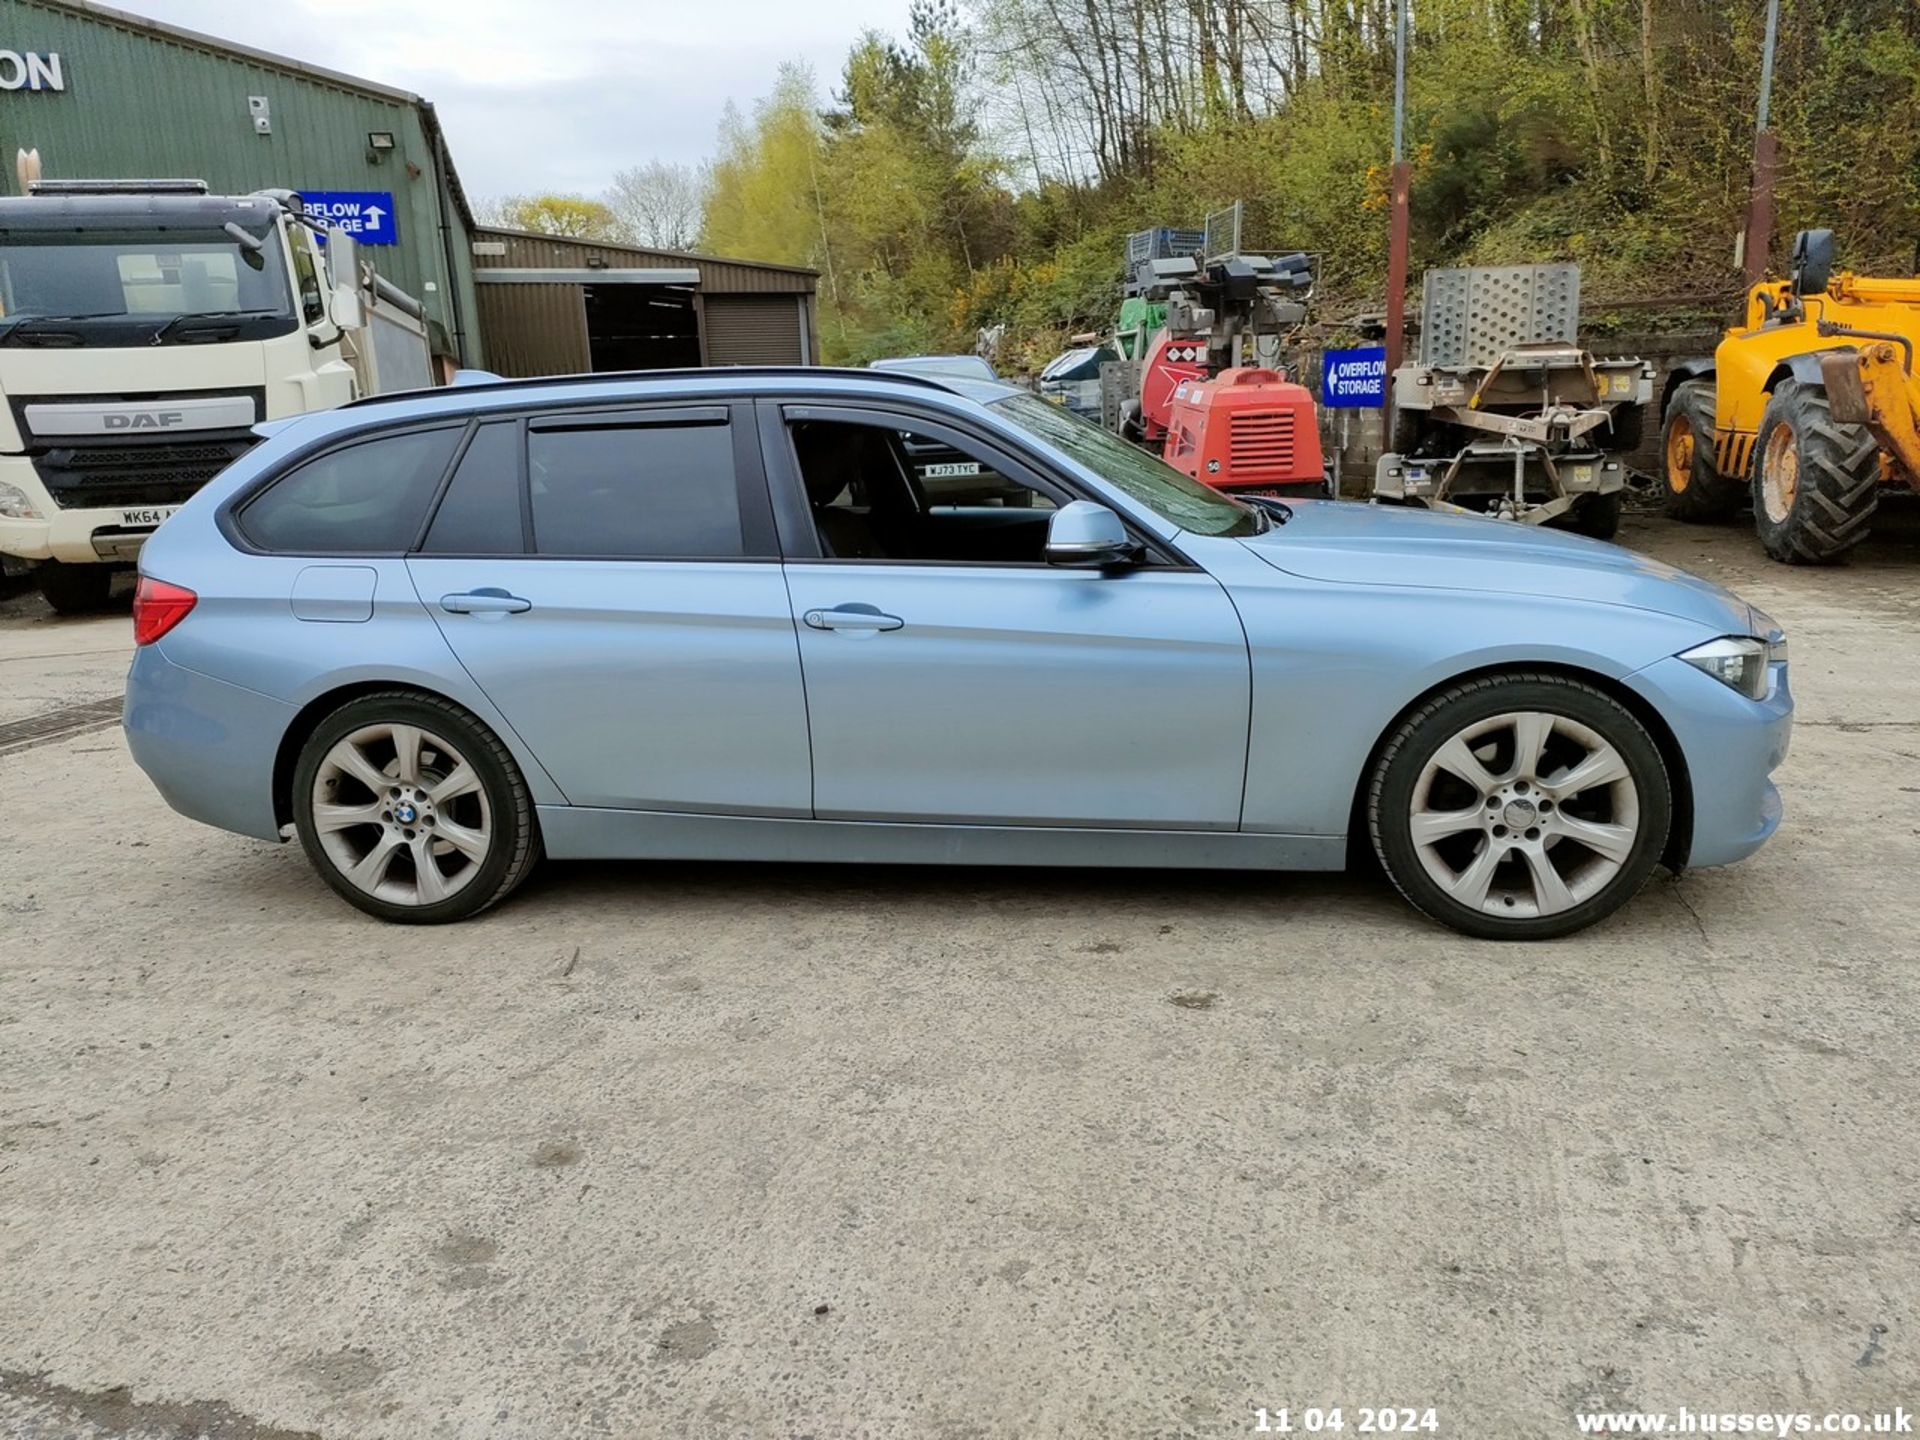 12/62 BMW 320D SE TOURING - 1995cc 5dr Estate (Blue, 174k) - Image 47 of 70